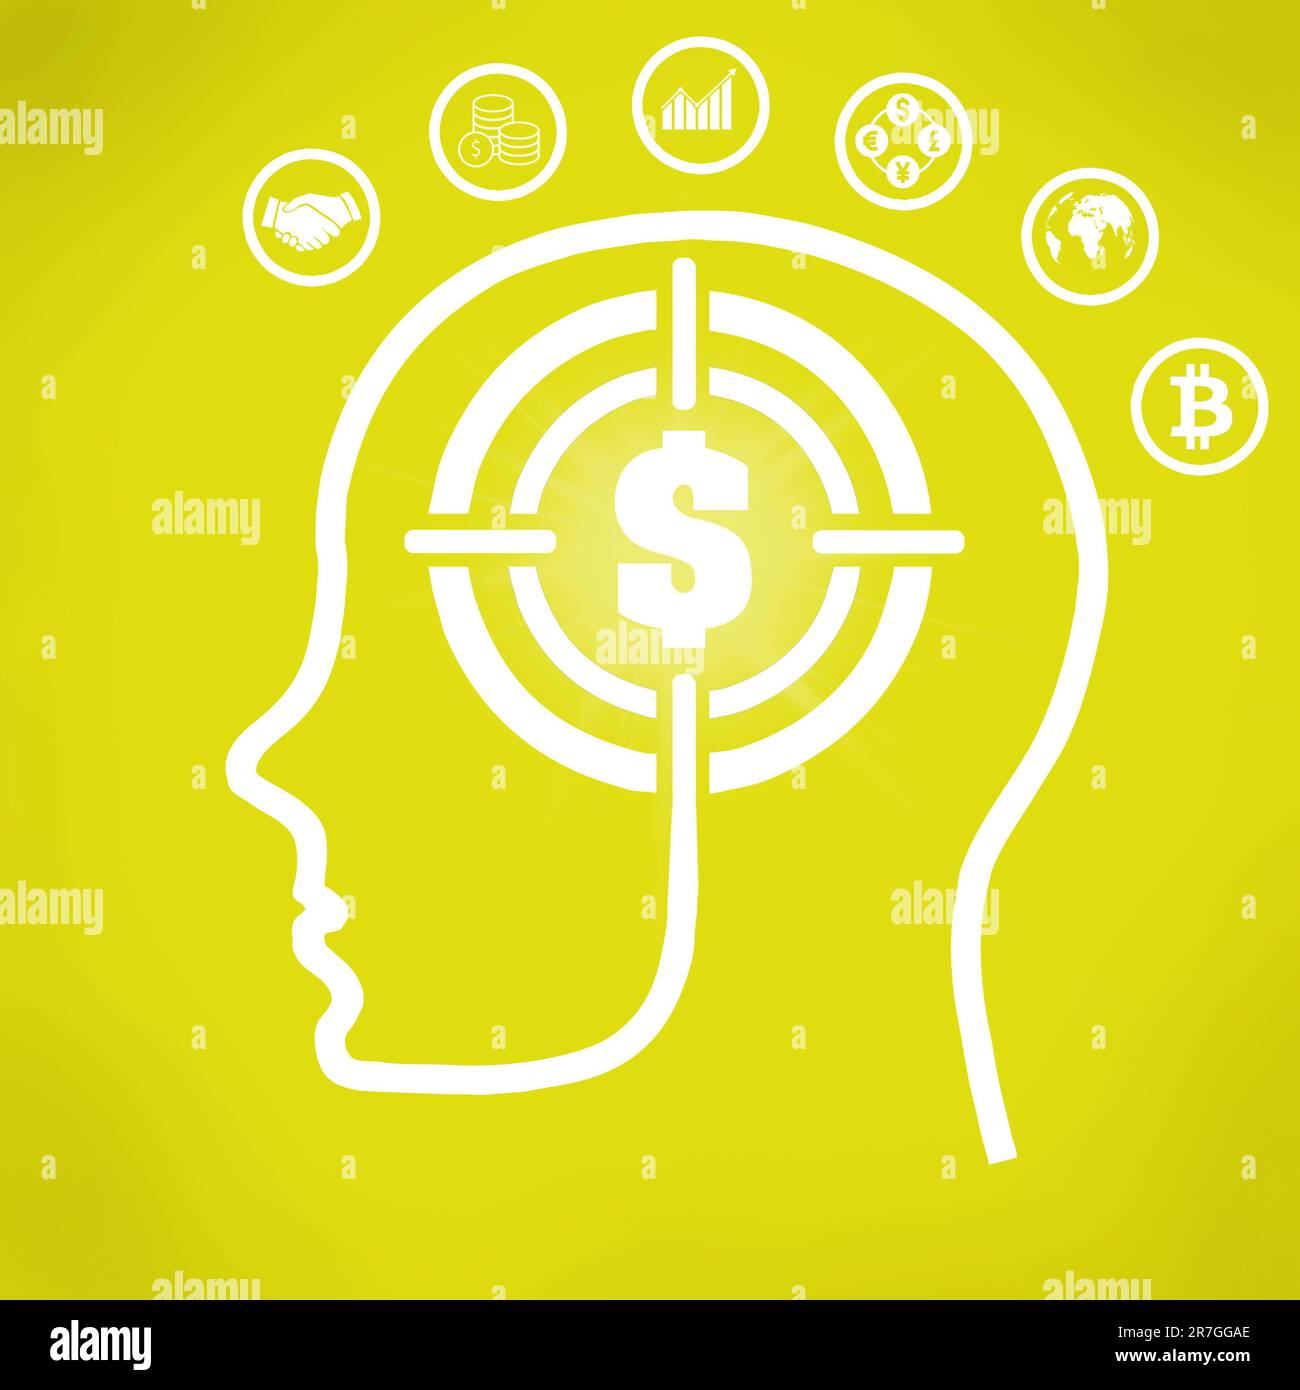 Illustrazione del contorno della testa umana con il segno del bersaglio del dollaro come cervello circondato dai pittogrammi differenti di affari-orientati - conce riuscito di affari Foto Stock